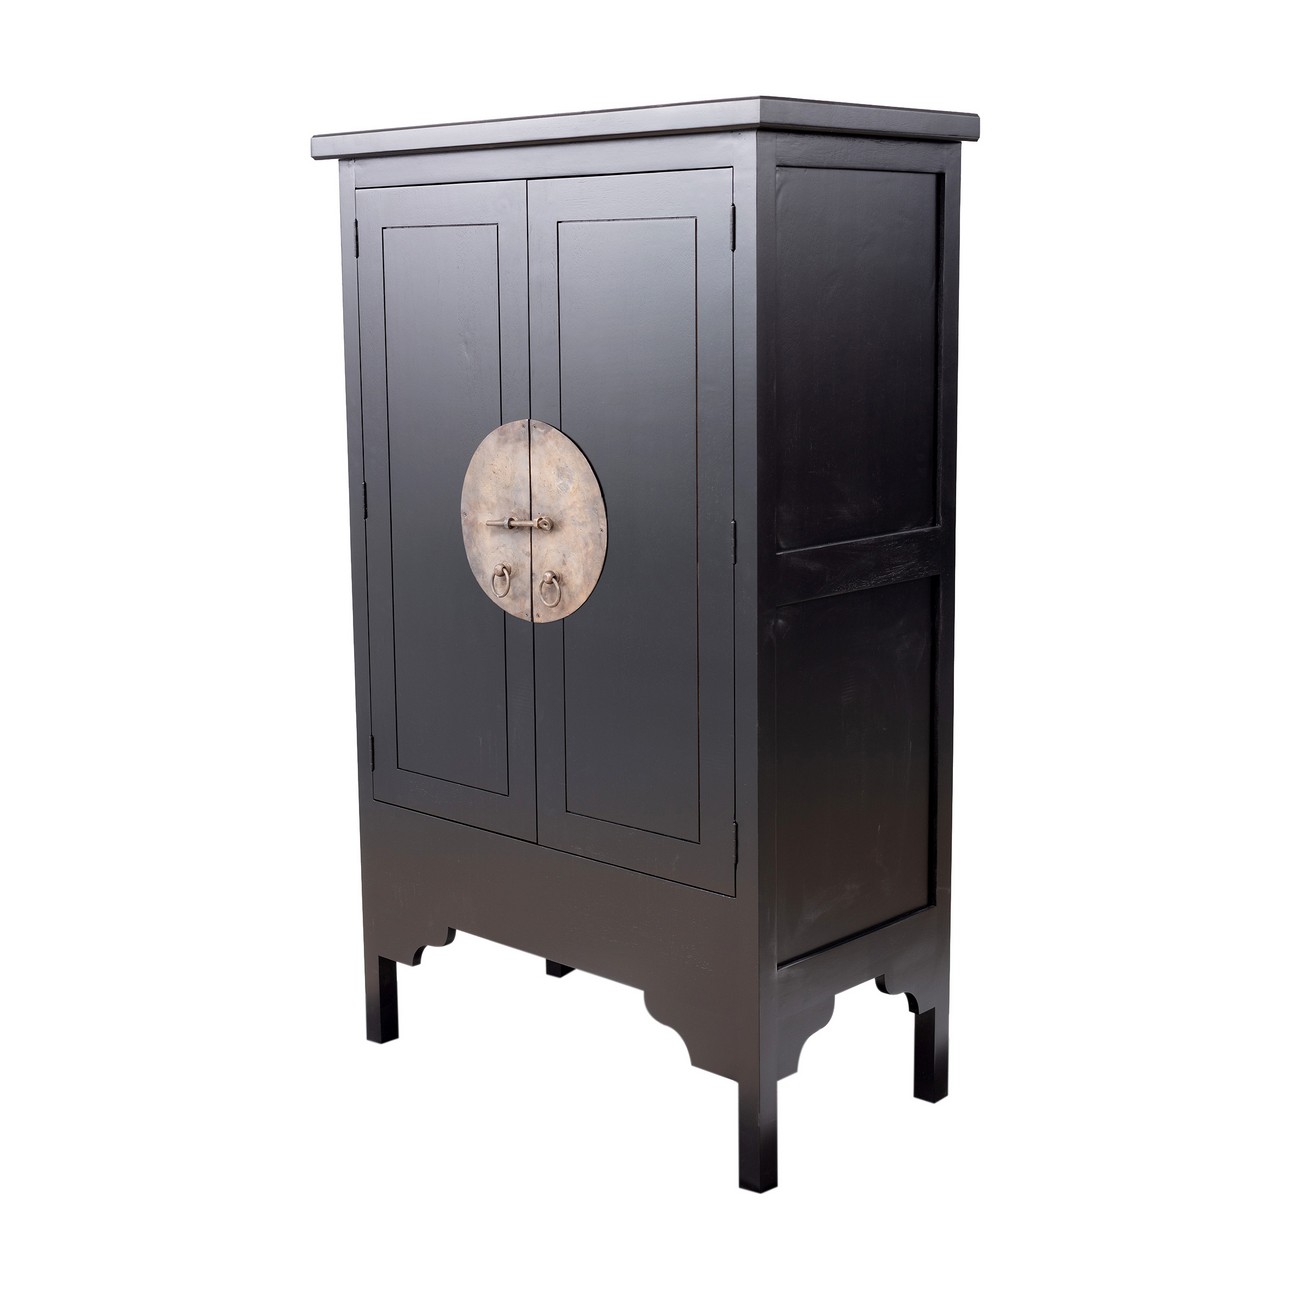 Petite armoire Modern 104x56x170cm noire